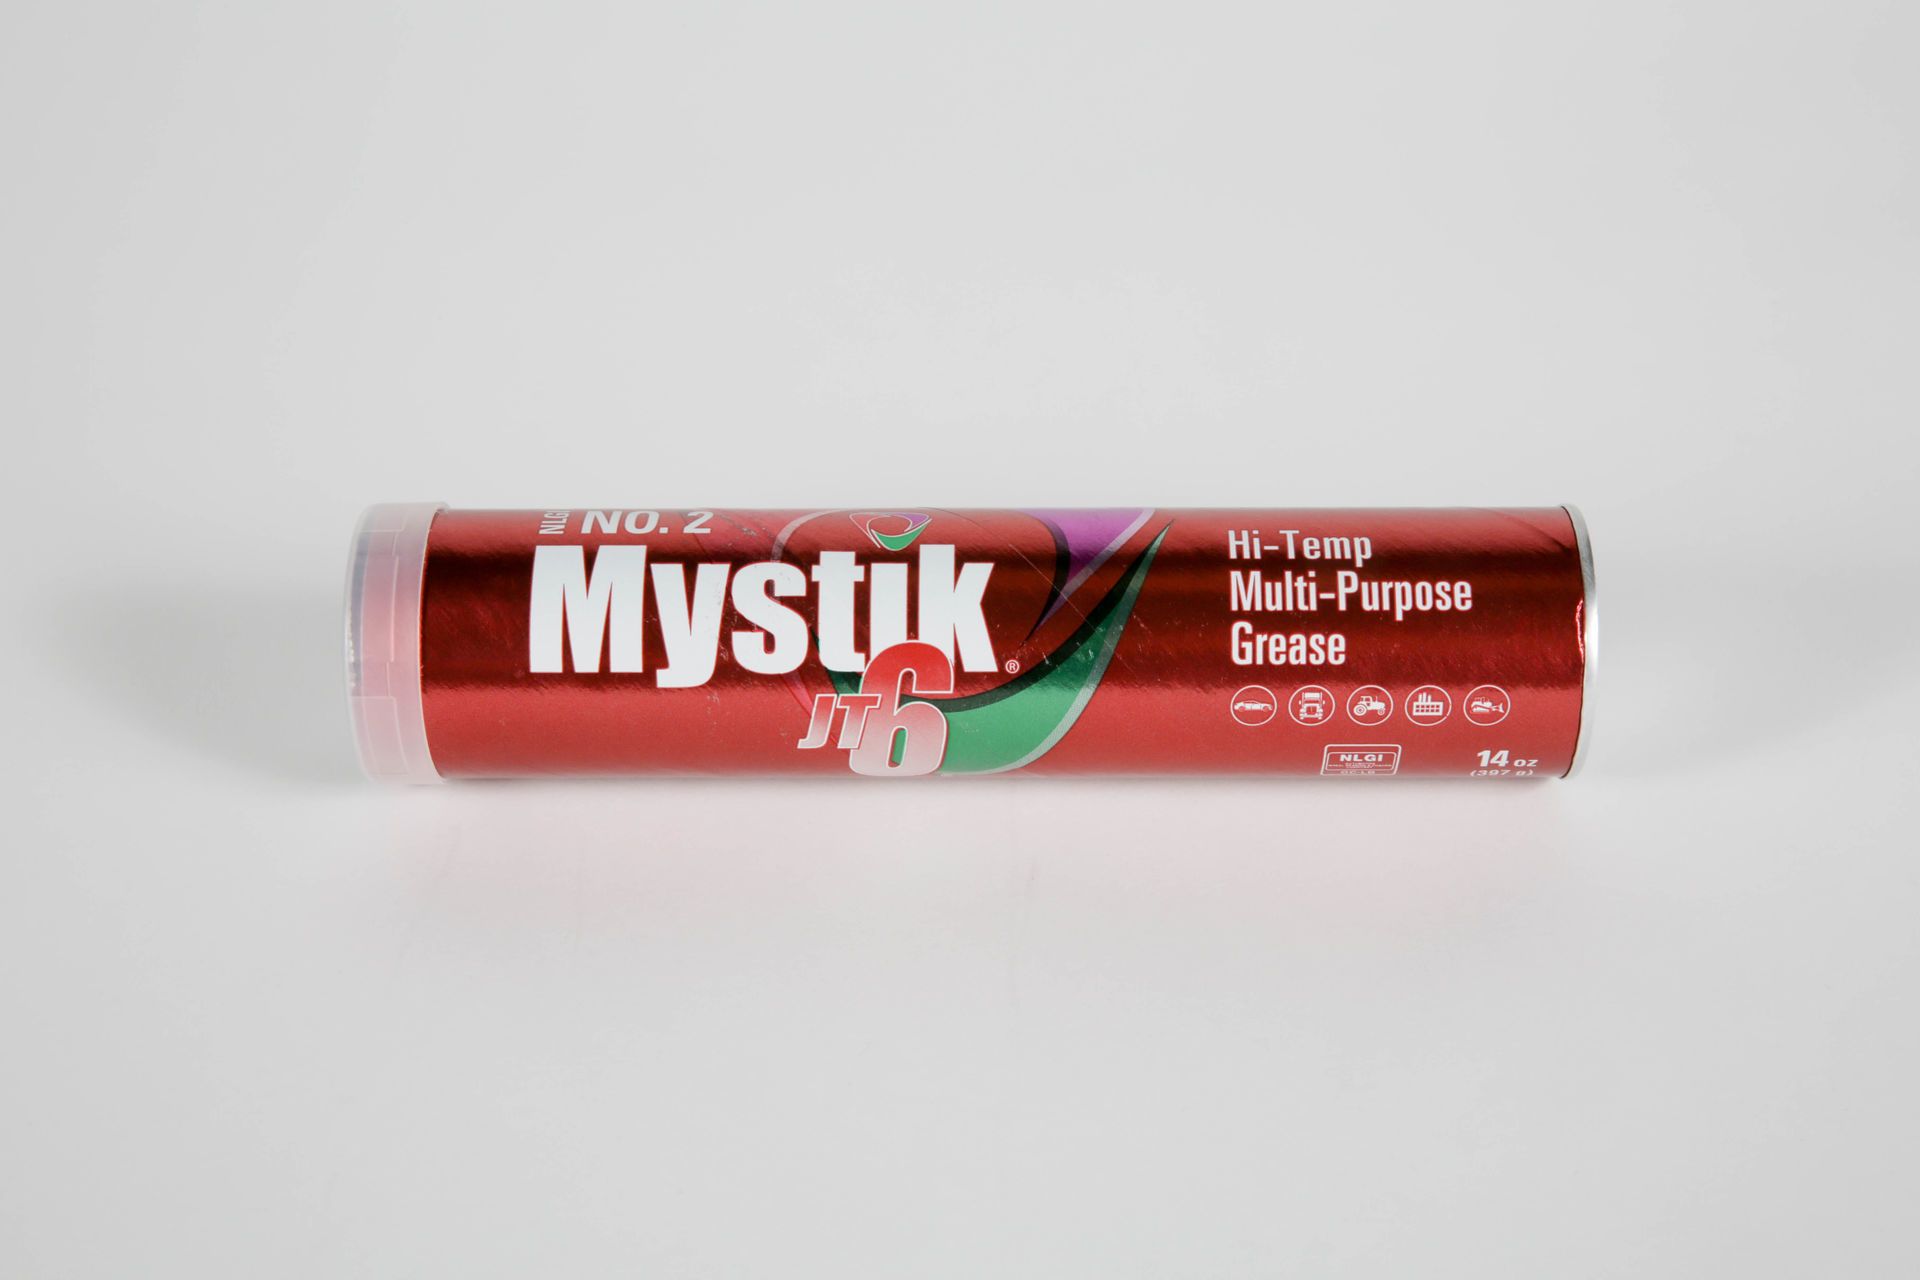 buy-mystik-jt-6-hi-temp-grease-2-10-1-case-online-yoder-oil